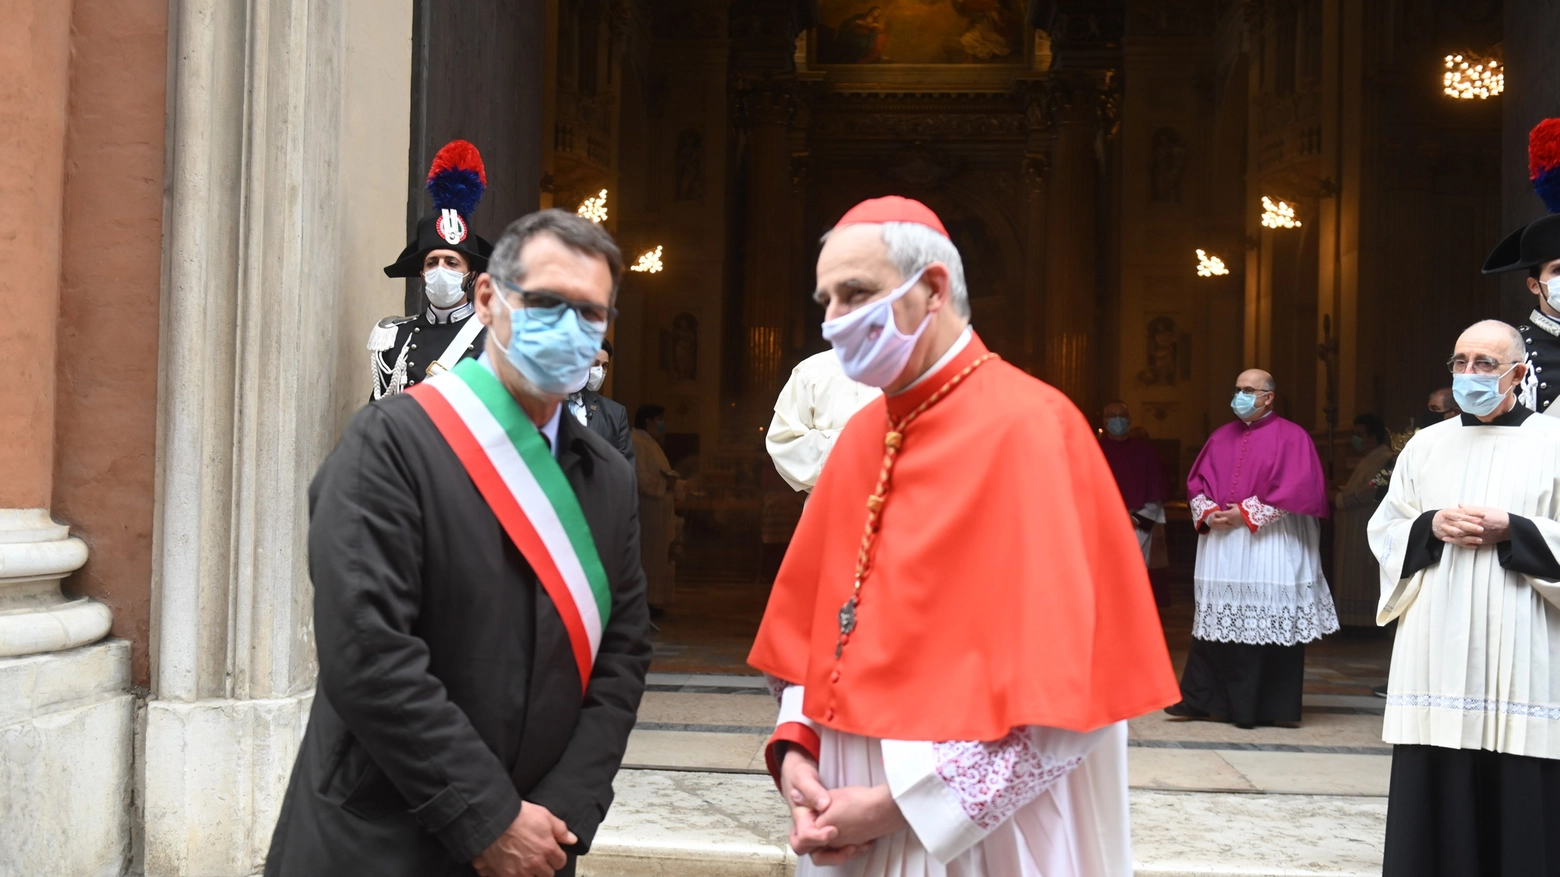 Il sindaco Merola con l'arcivescovo Zuppi alla Madonna di San Luca (Schicchi)